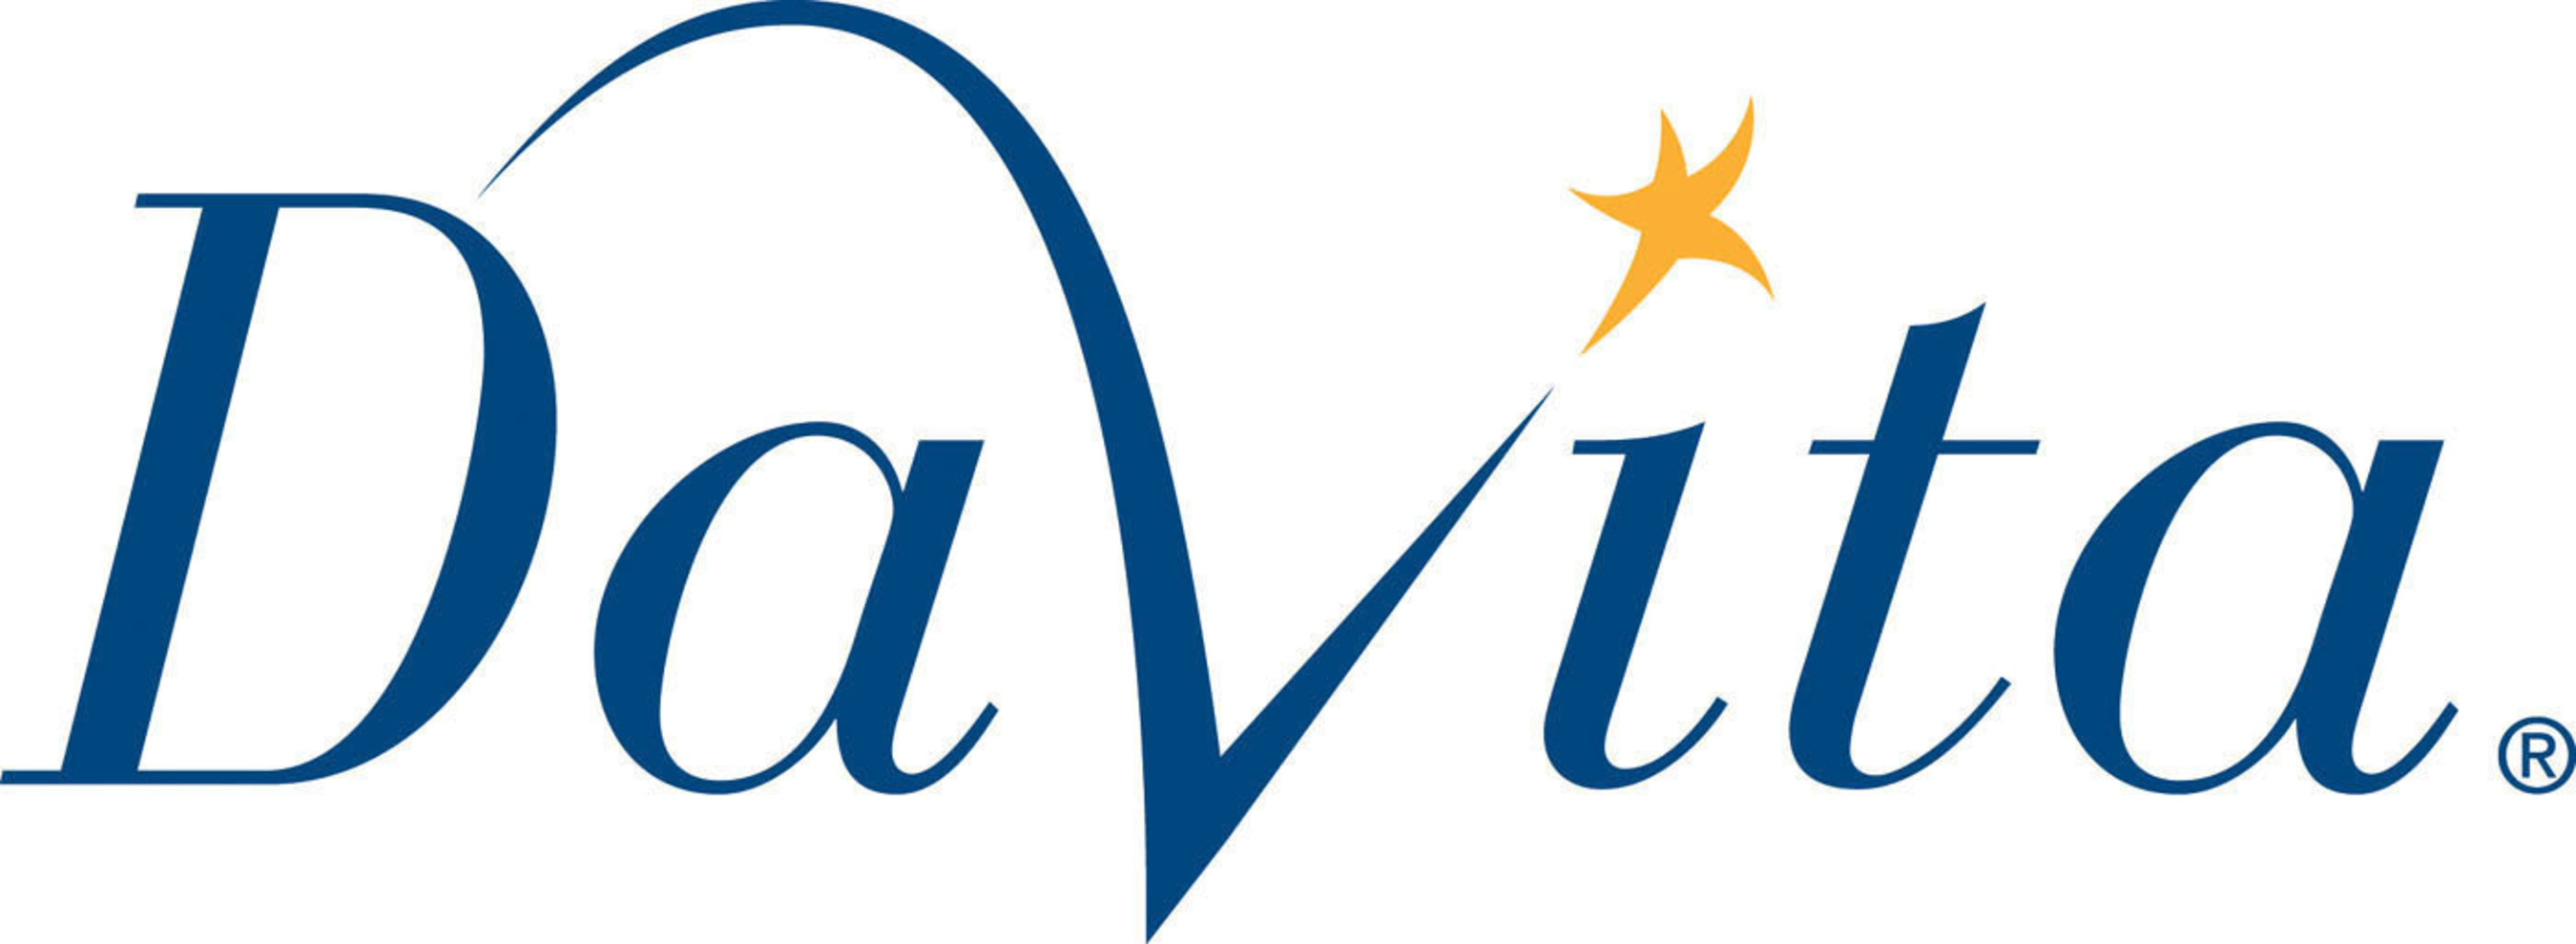 DaVita logo. (PRNewsFoto/DaVita)